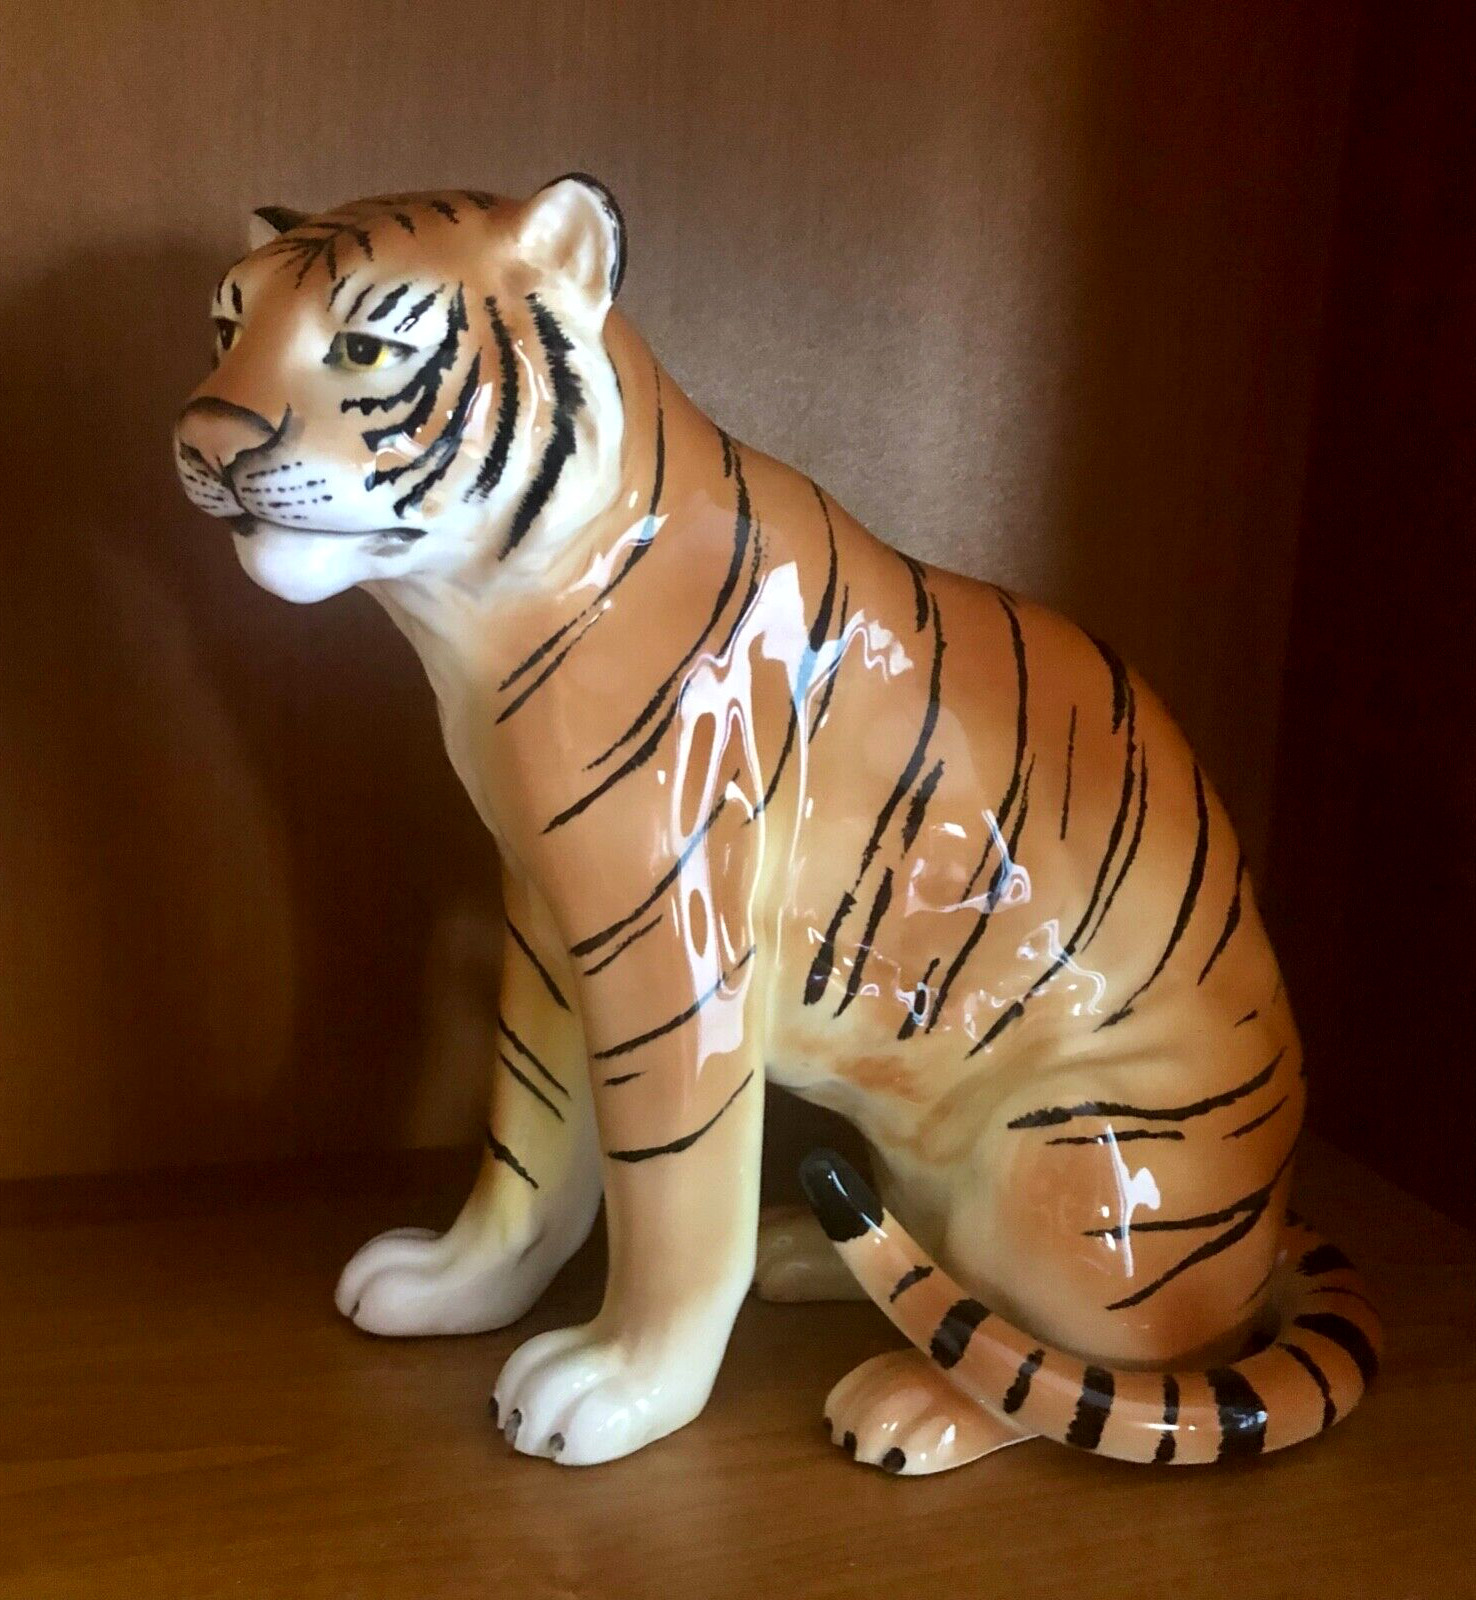 Vintage TILSO Tiger Hand Painted Porcelain Made in Japan ~10